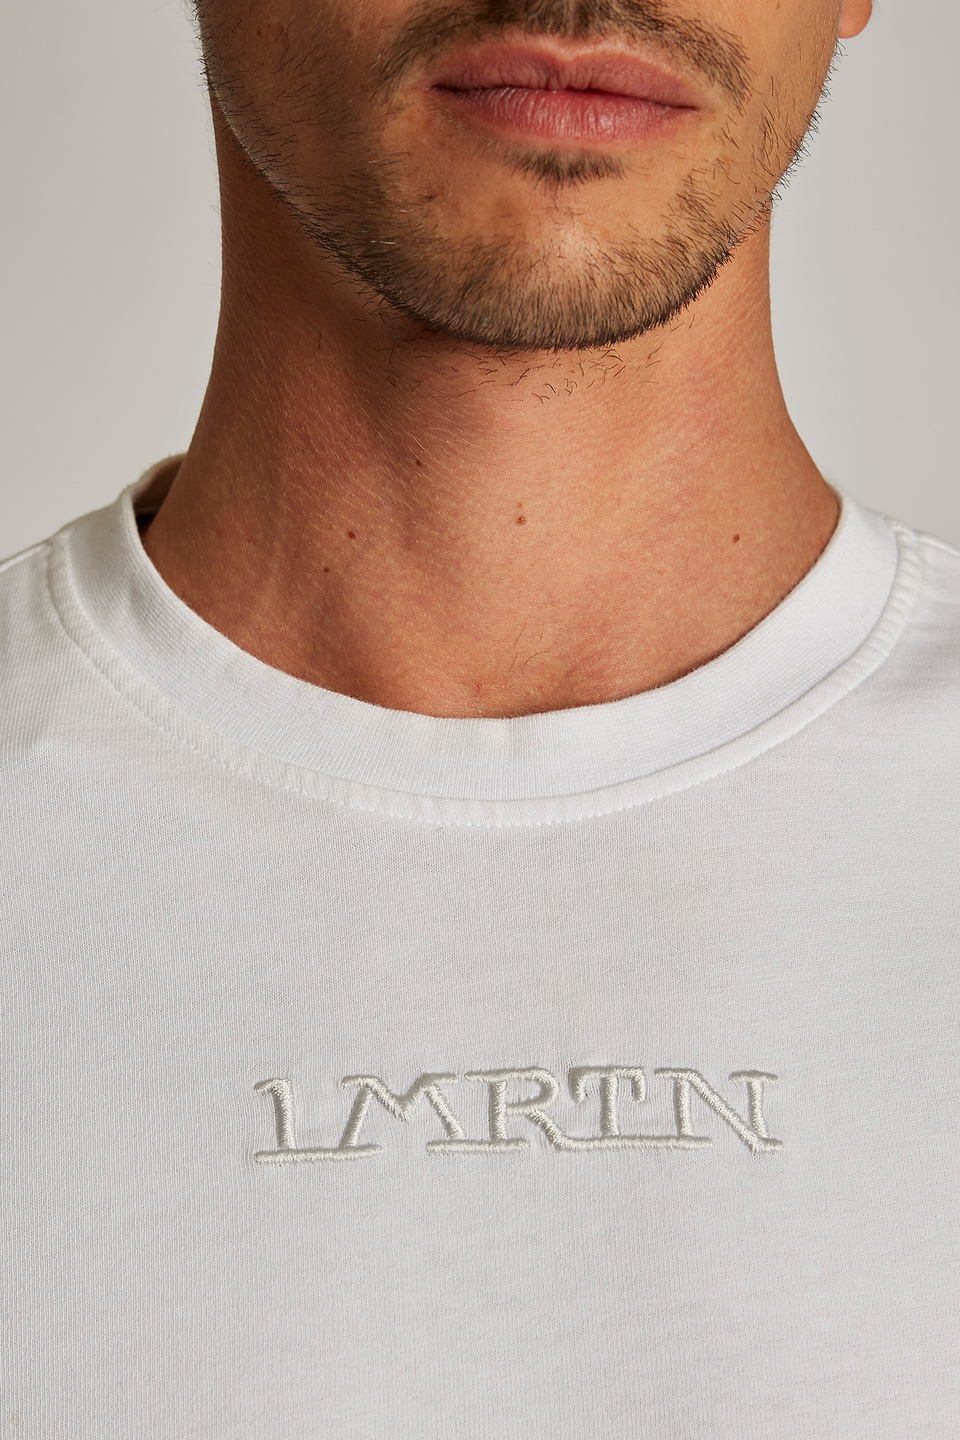 T-shirt da uomo in cotone a maniche corte modello over - La Martina - Official Online Shop